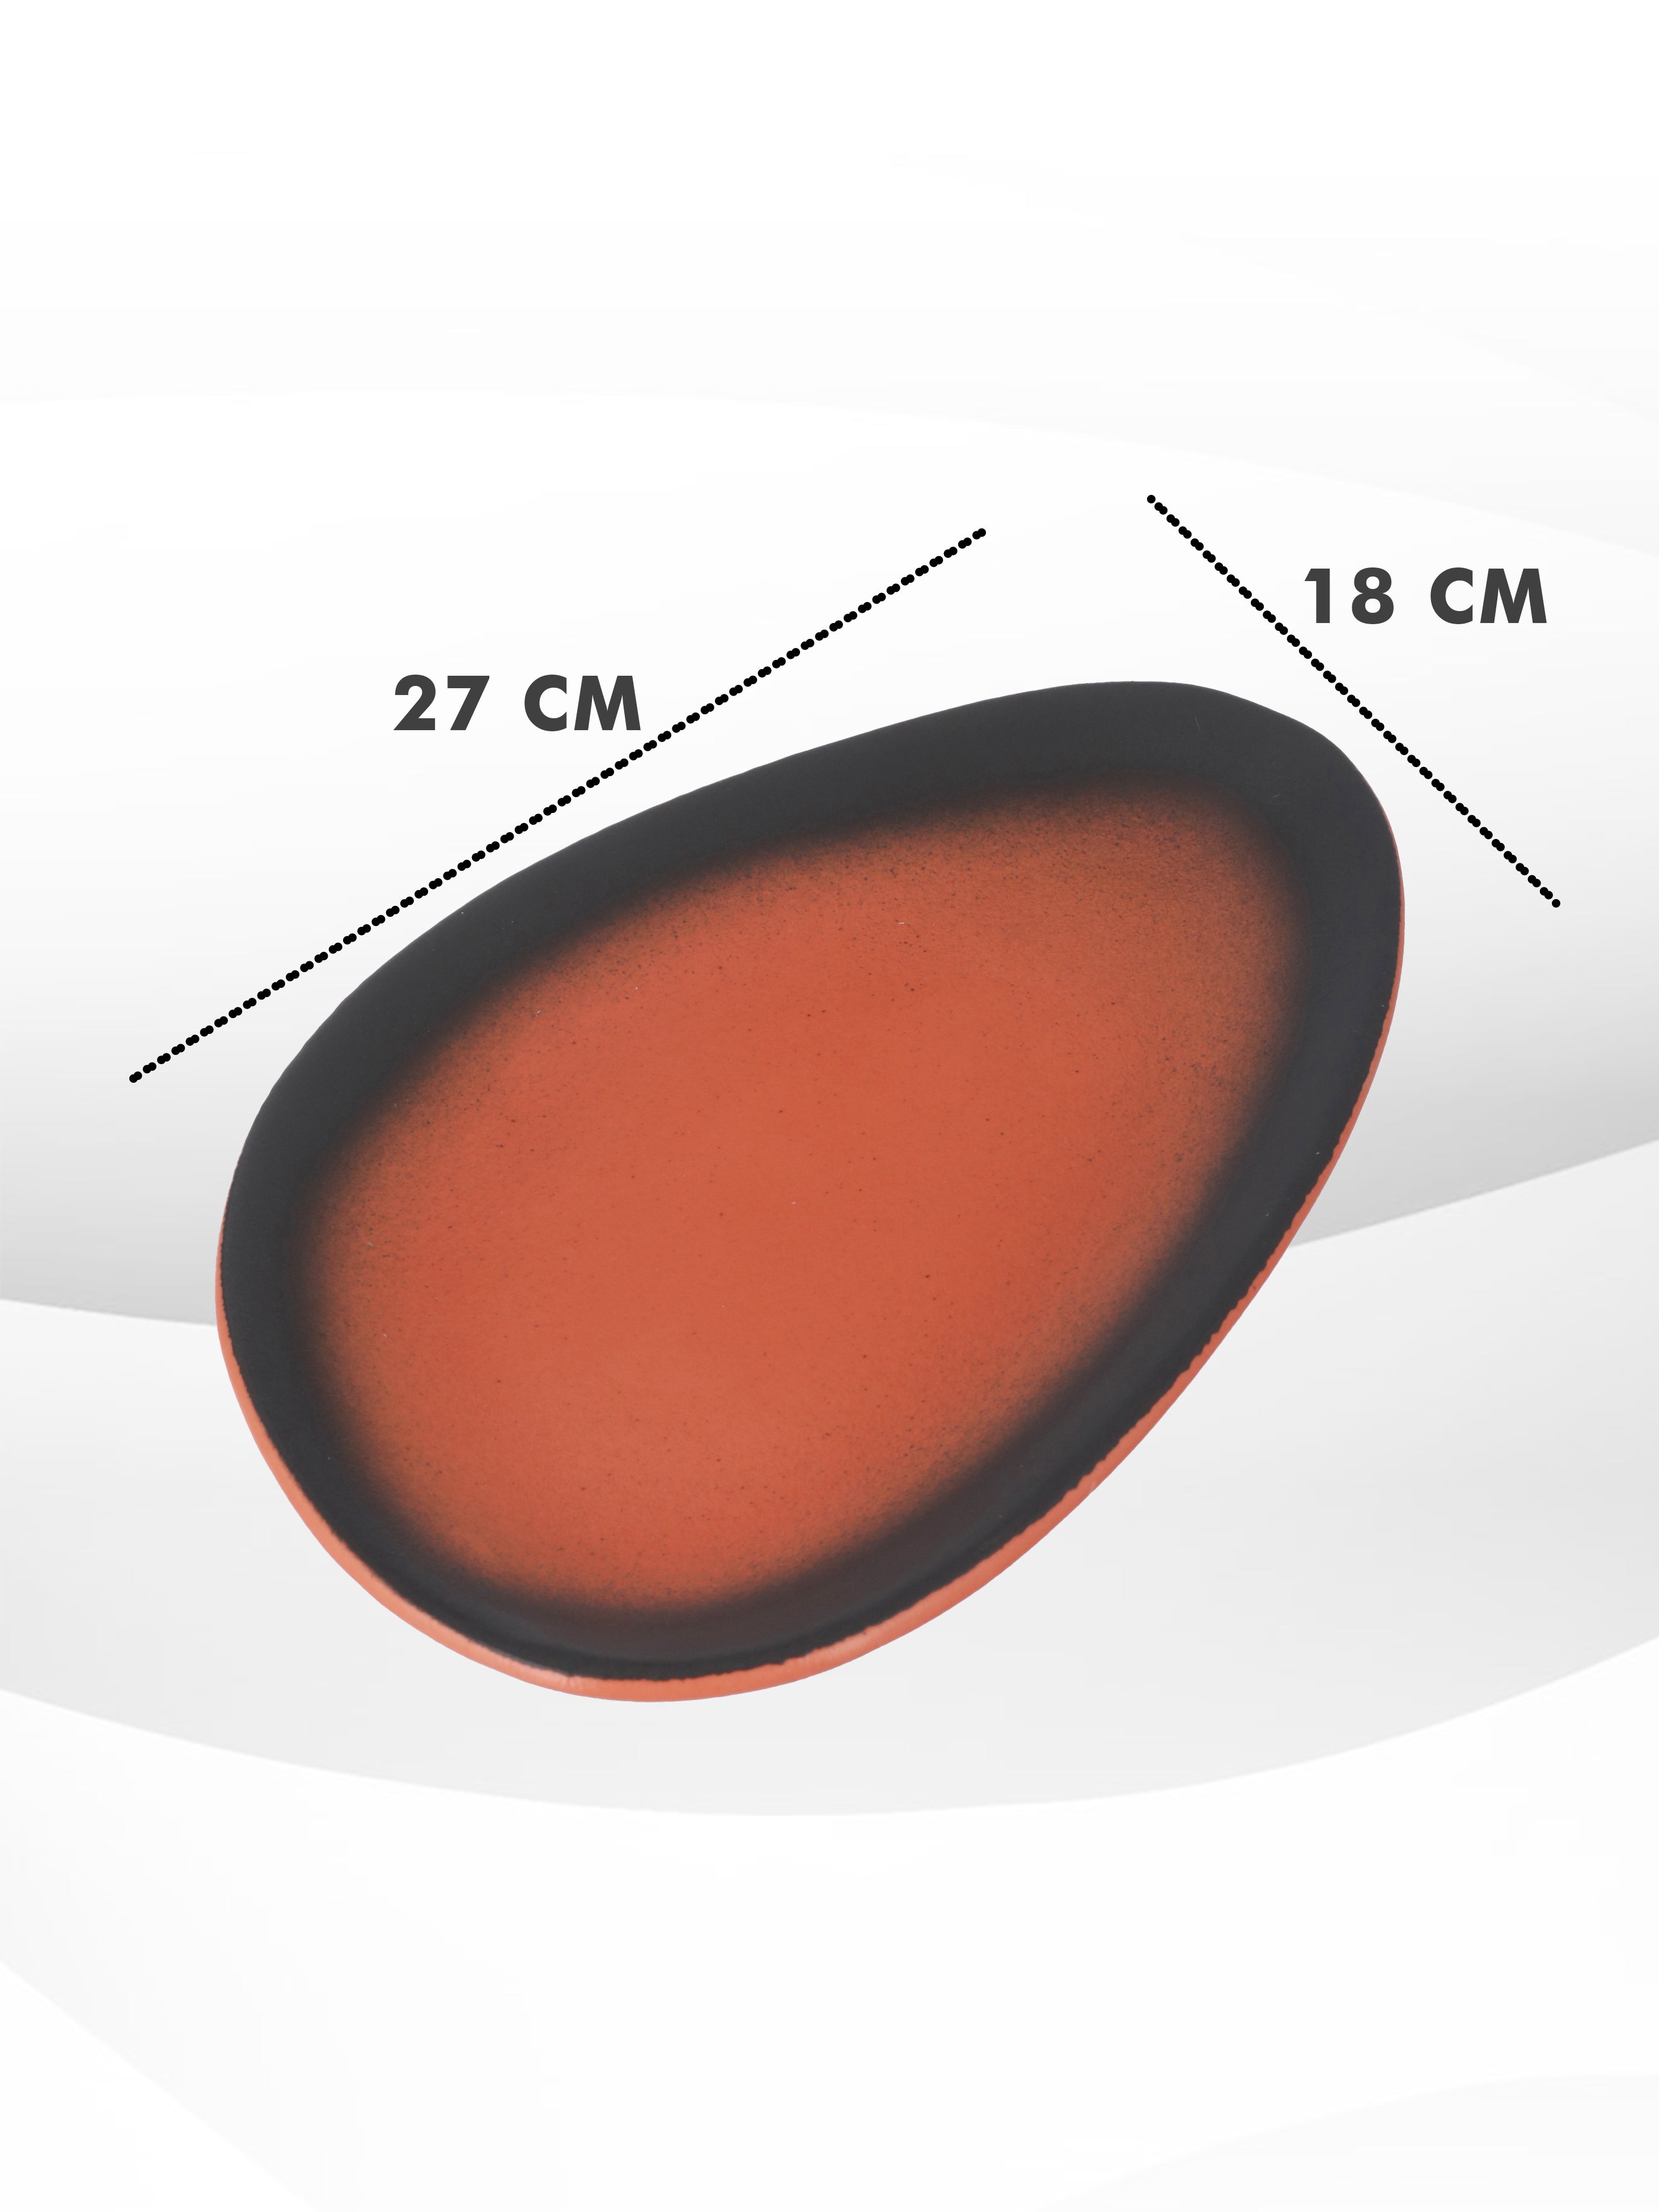 Black & orange Ceramic Serving Platter Set of 2